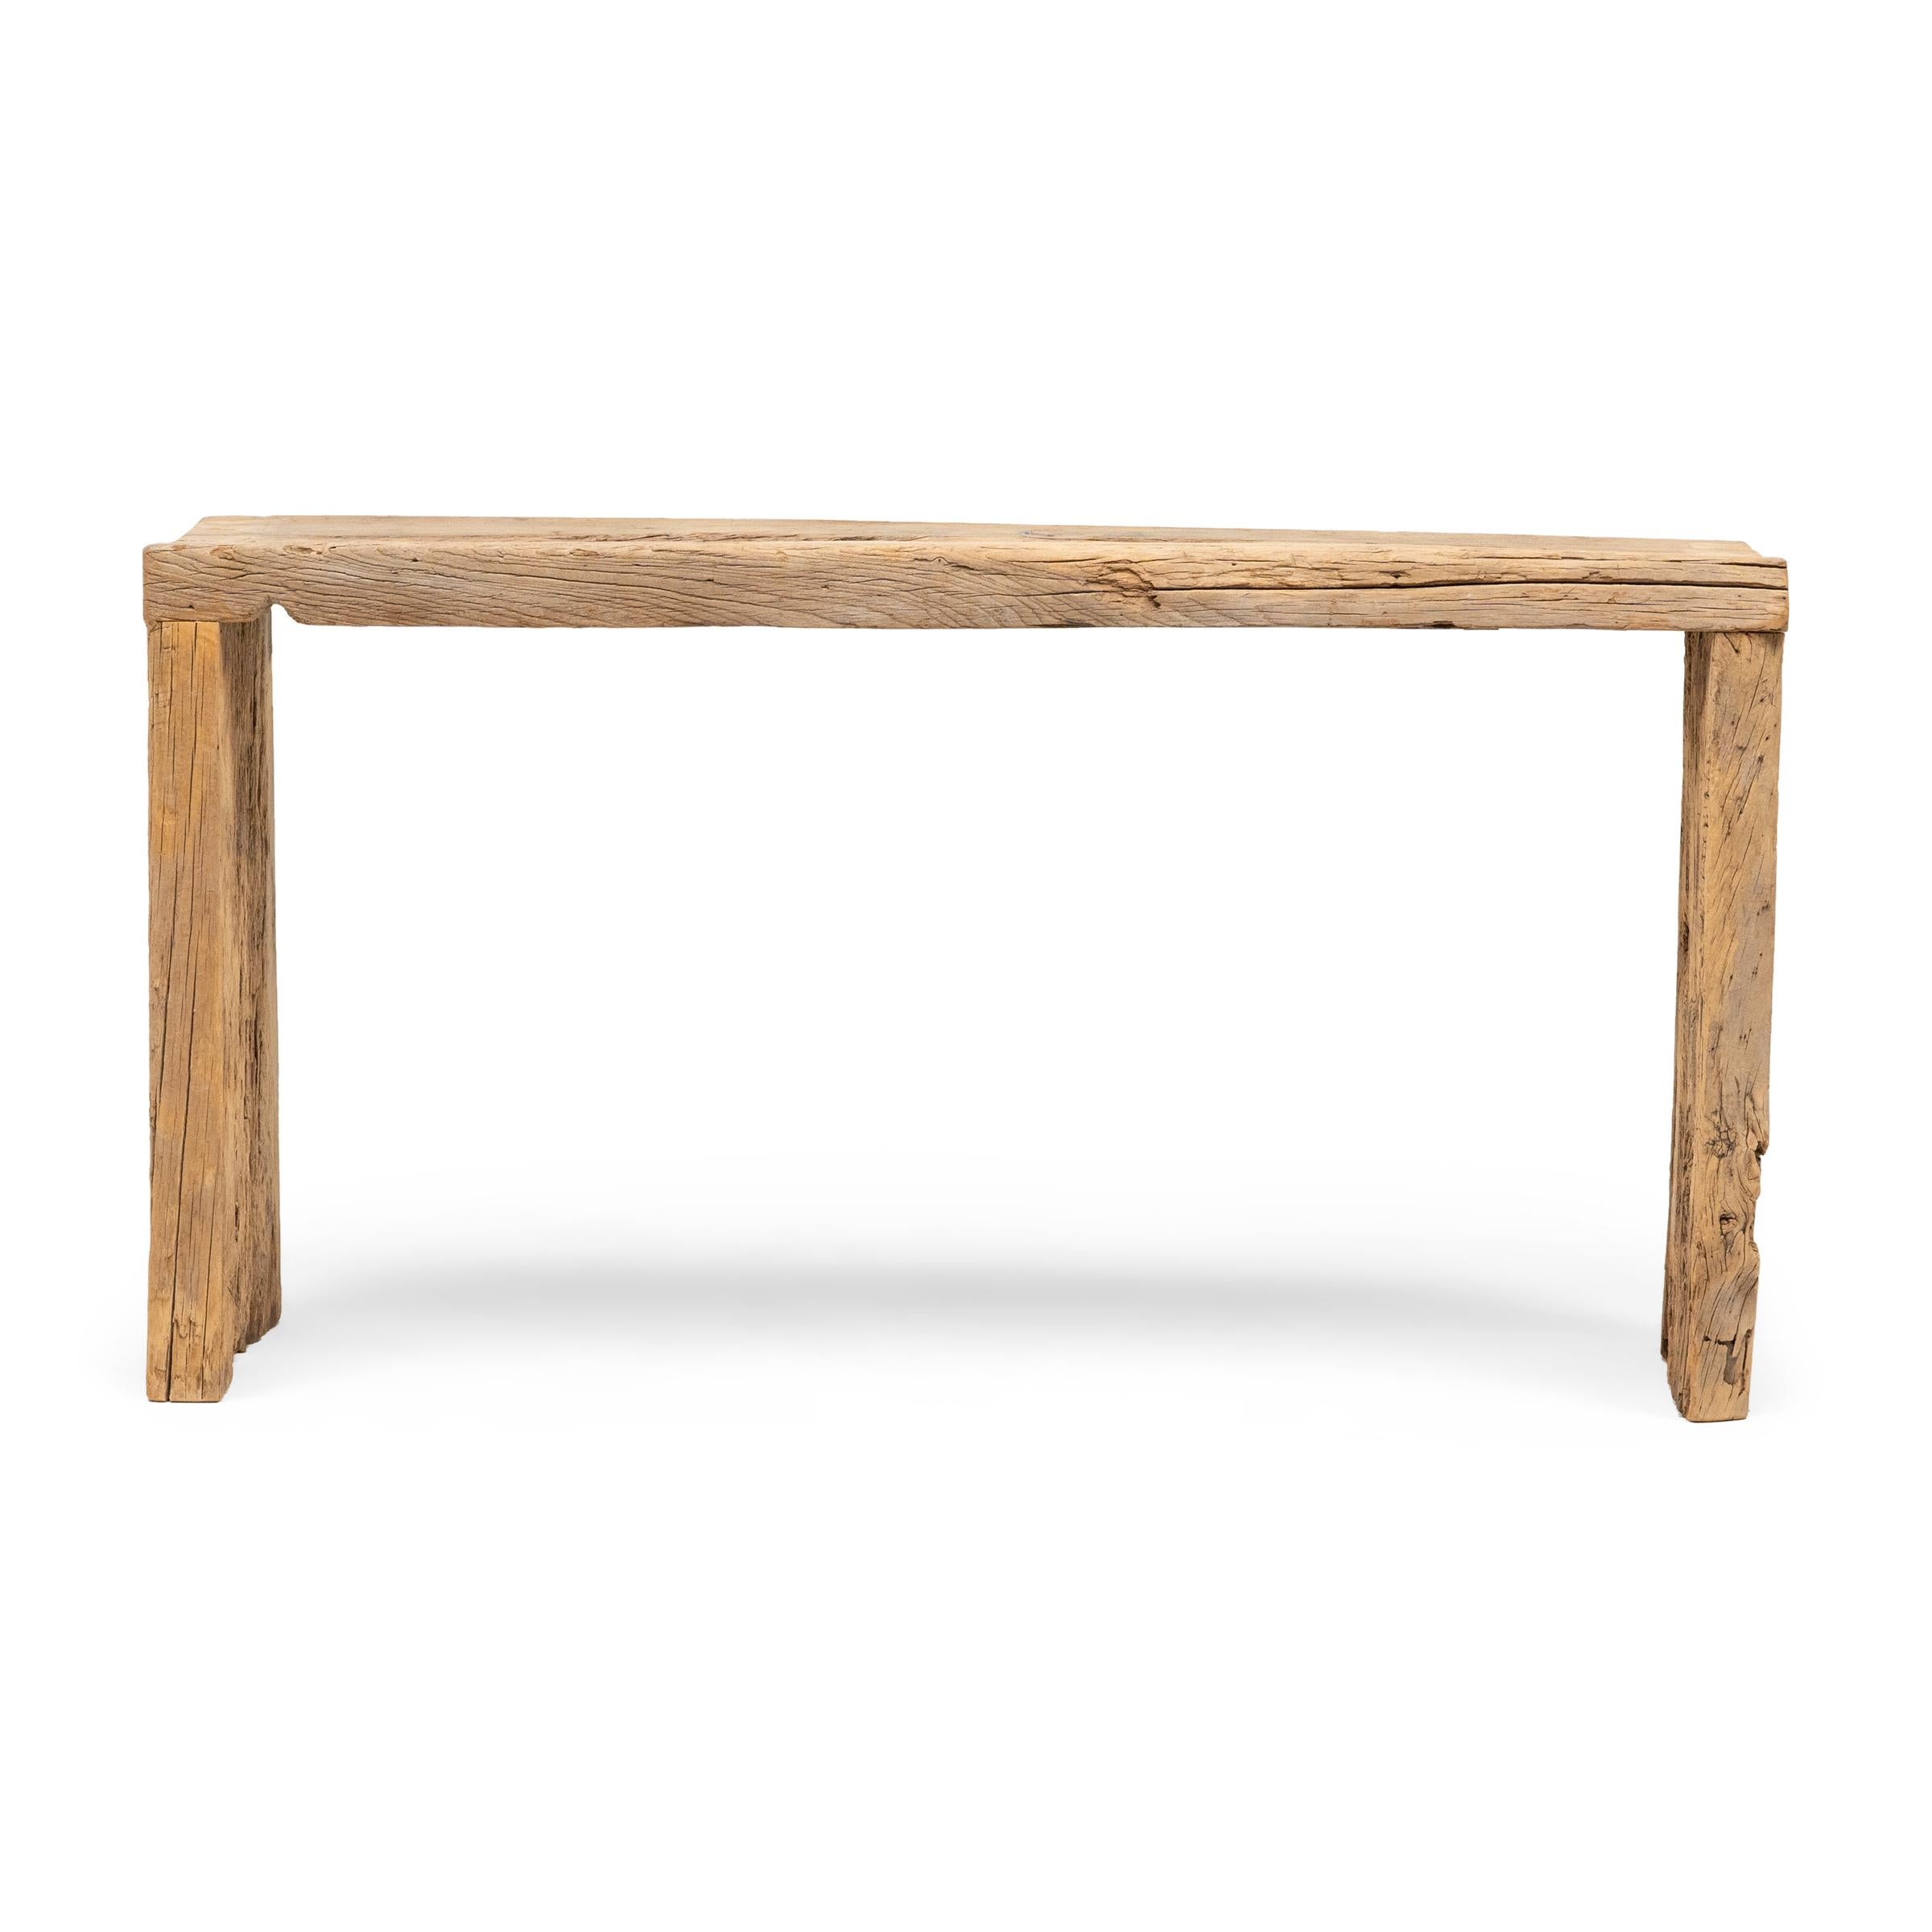 Dieser moderne Konsolentisch zelebriert den Wabi-Sabi-Stil. Der Tisch ist aus Holz gefertigt, das aus der Architektur der Qing-Dynastie stammt, und hat ein minimalistisches Wasserfalldesign mit schwalbenschwanzförmigen Ecken, die traditionelle